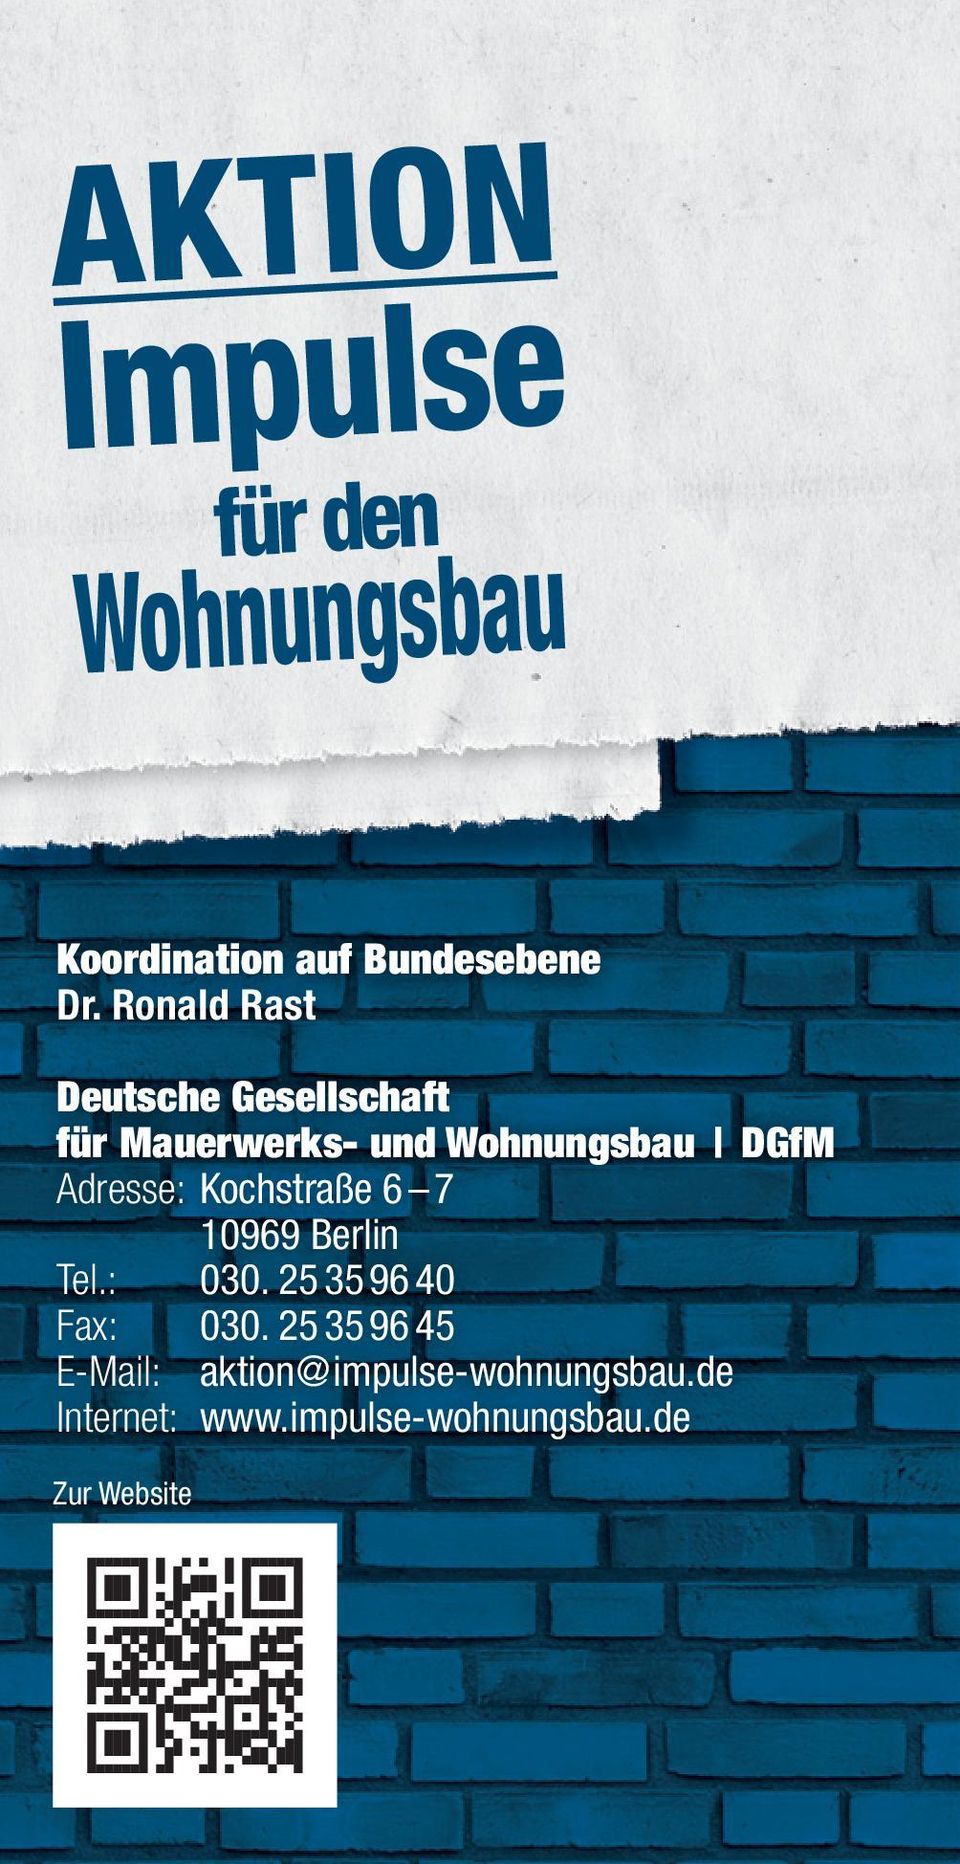 Adresse: Kochstraße 6 7 10969 Berlin Tel.: 030. 25 35 96 40 Fax: 030.